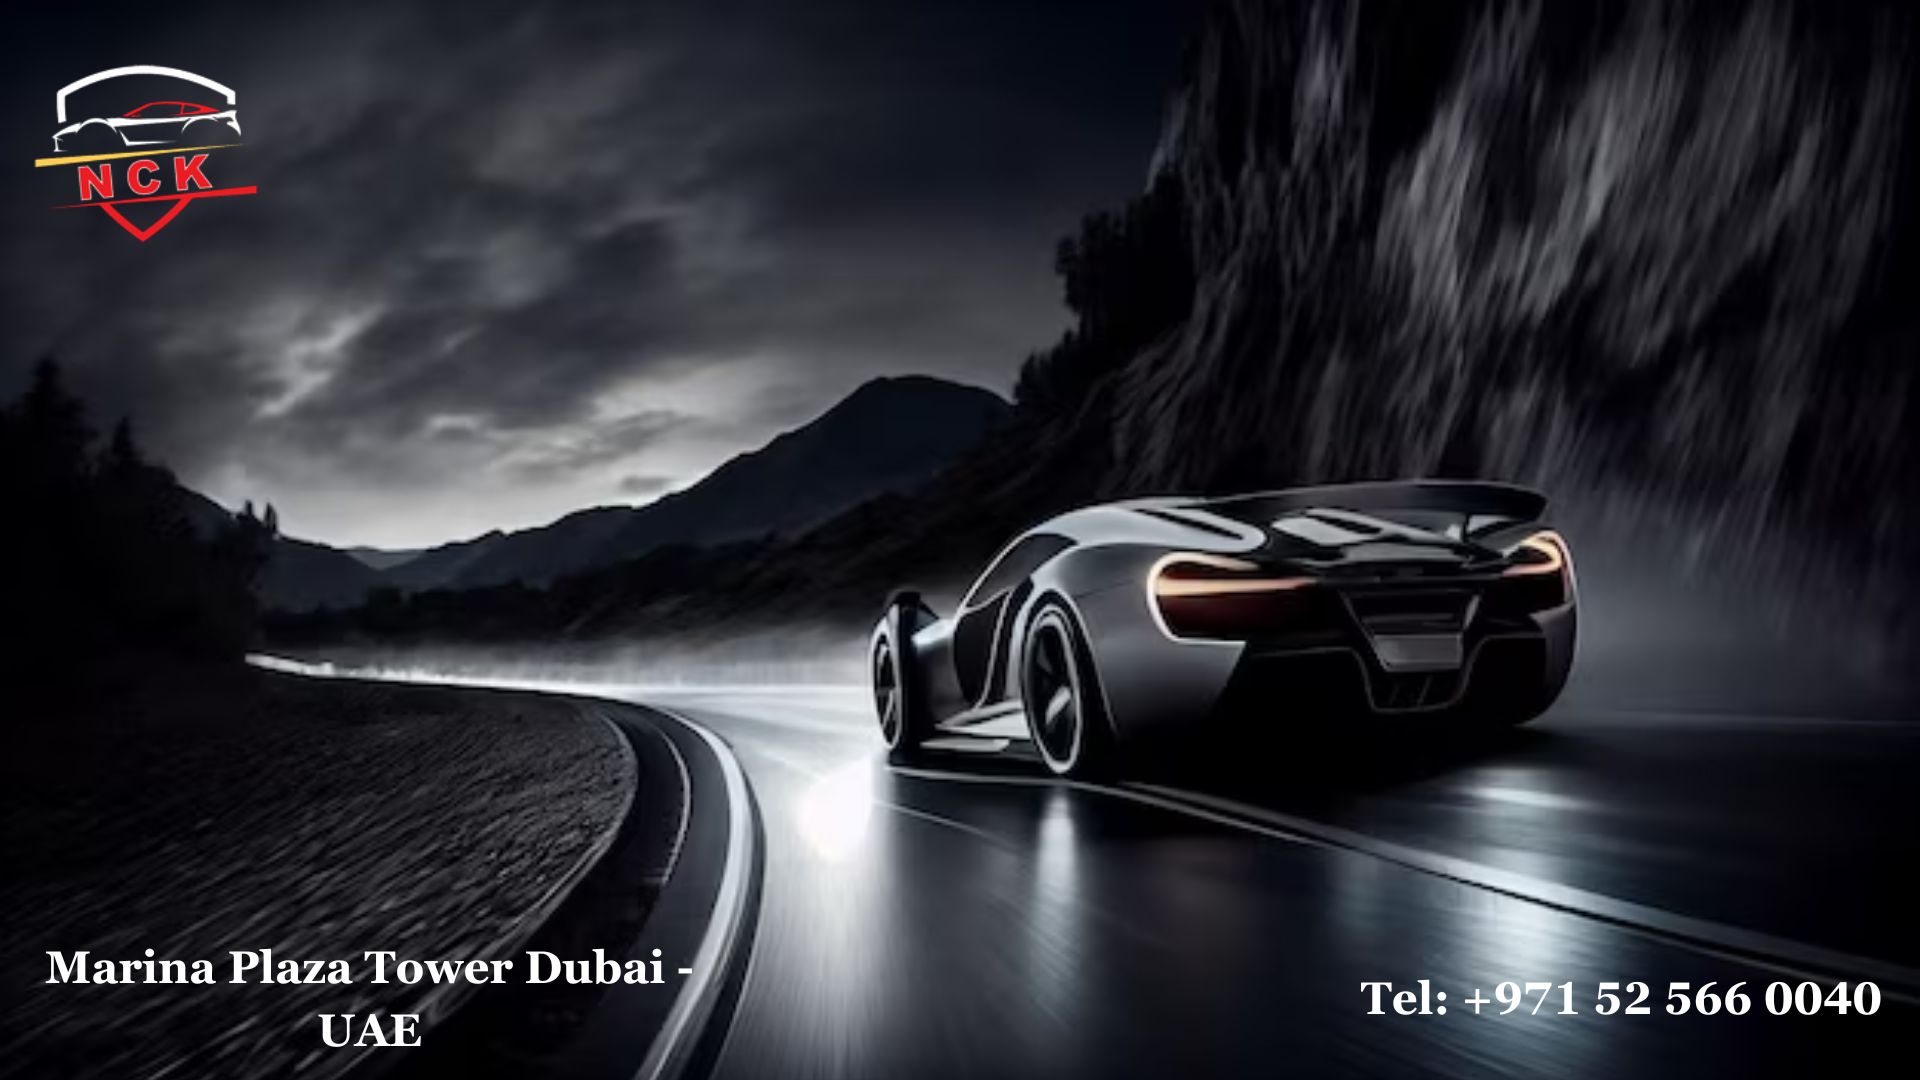 Luxury car rentals in Dubai